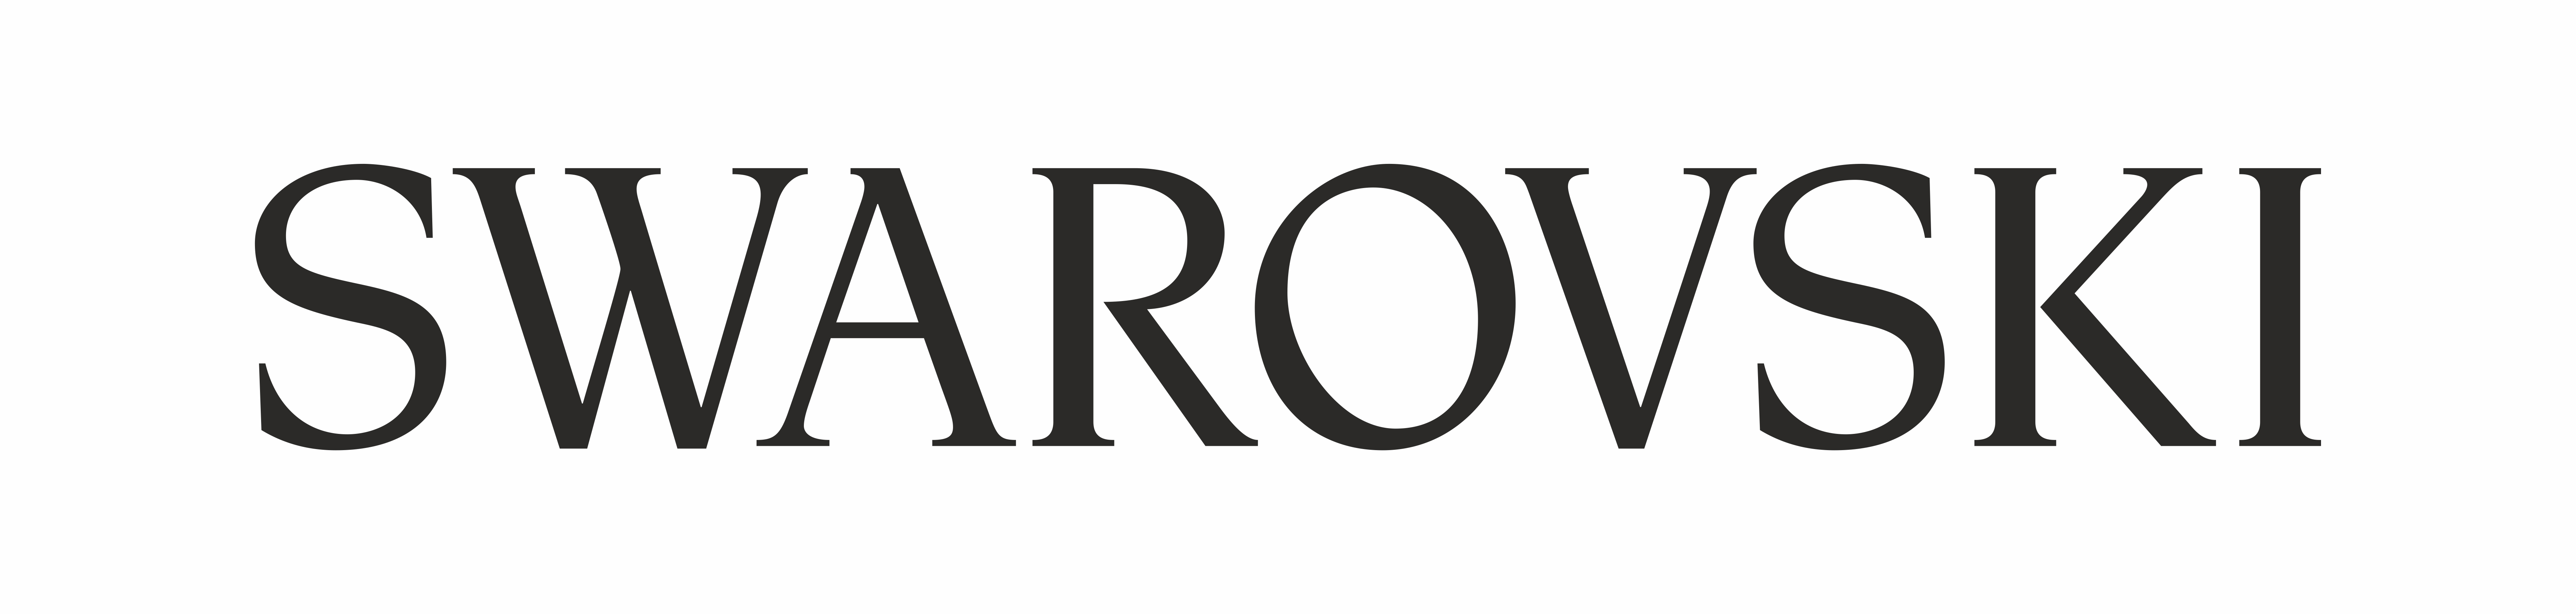 swarovski_pozitiv_logo_2022_06.jpg